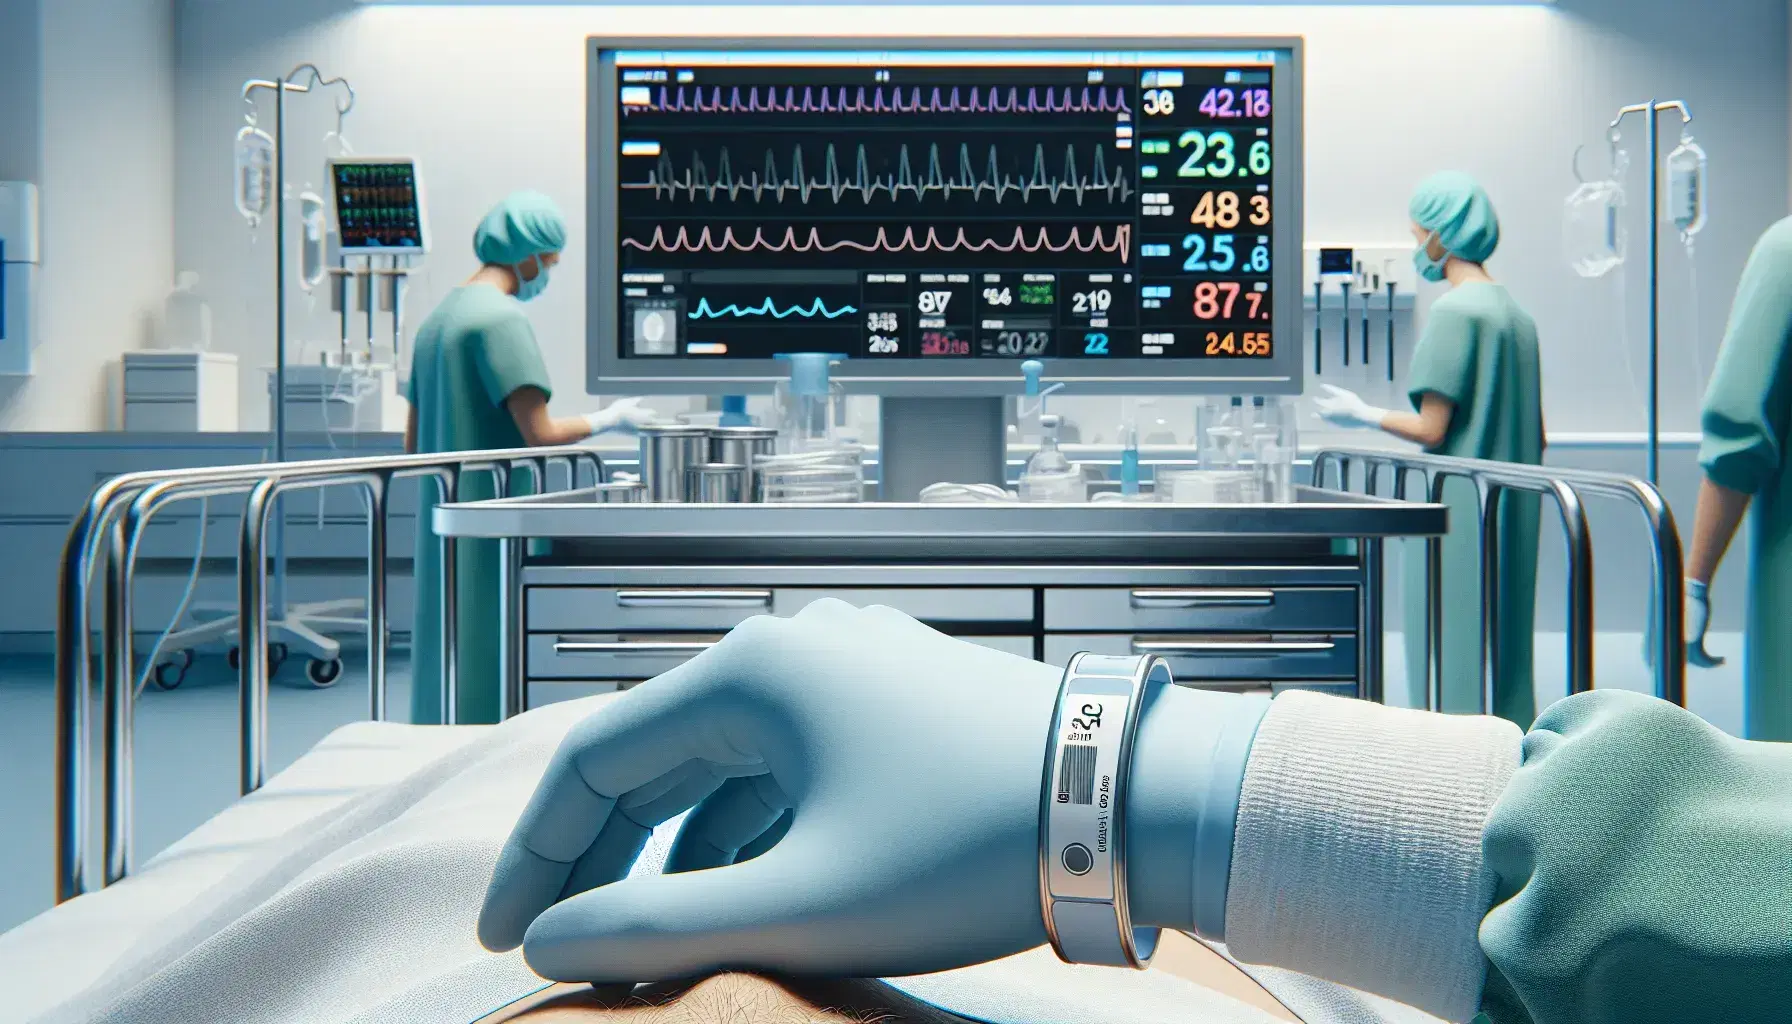 Mano con guante azul colocando pulsera de identificación en paciente dentro de un hospital, con monitor de signos vitales y personal médico en fondo.